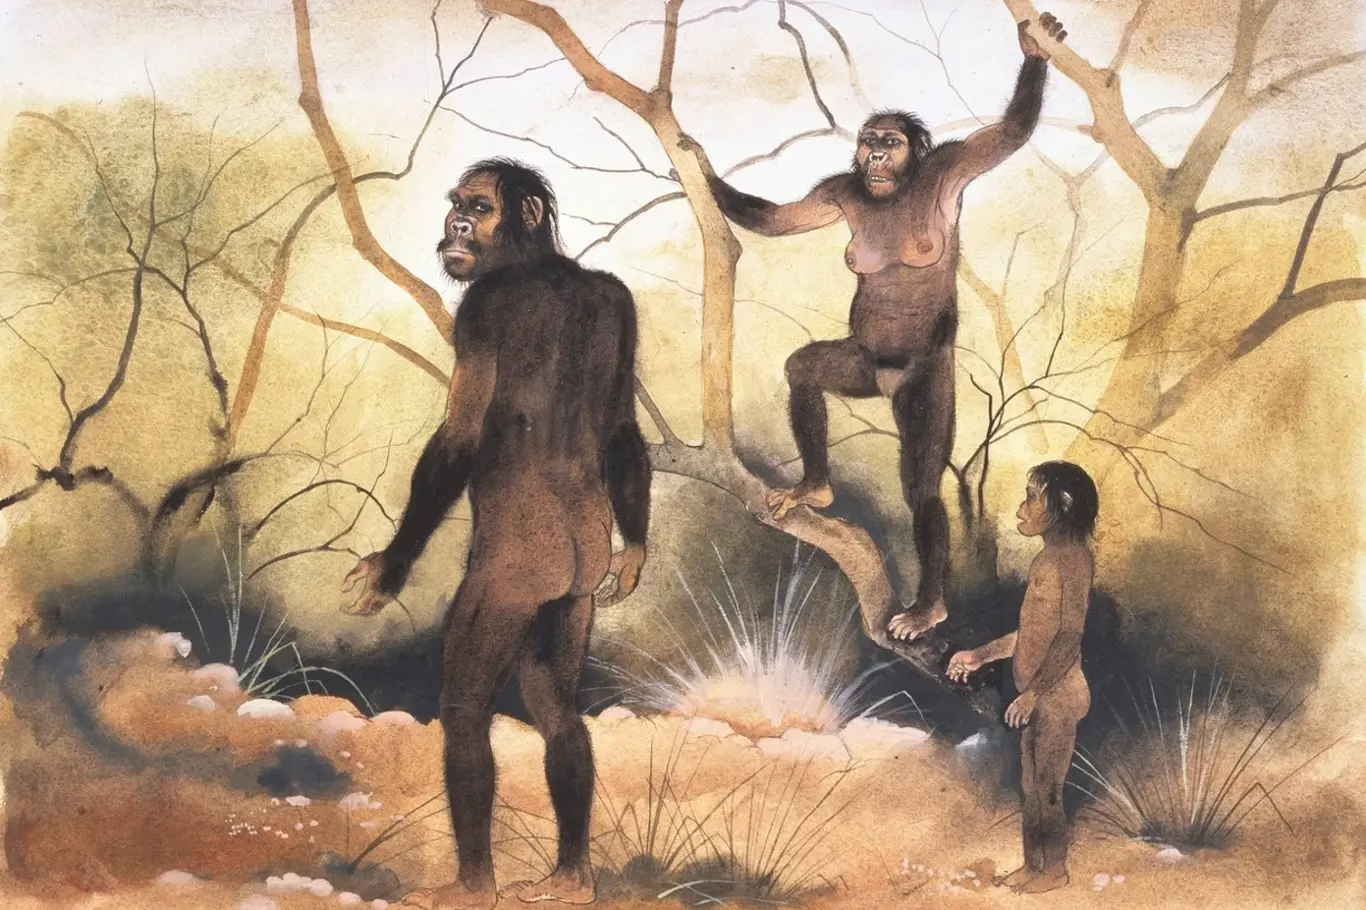 Zástupci Australopithecus afarensis chodili vzpřímeně, ale ještě uměli šplhat po stromech.